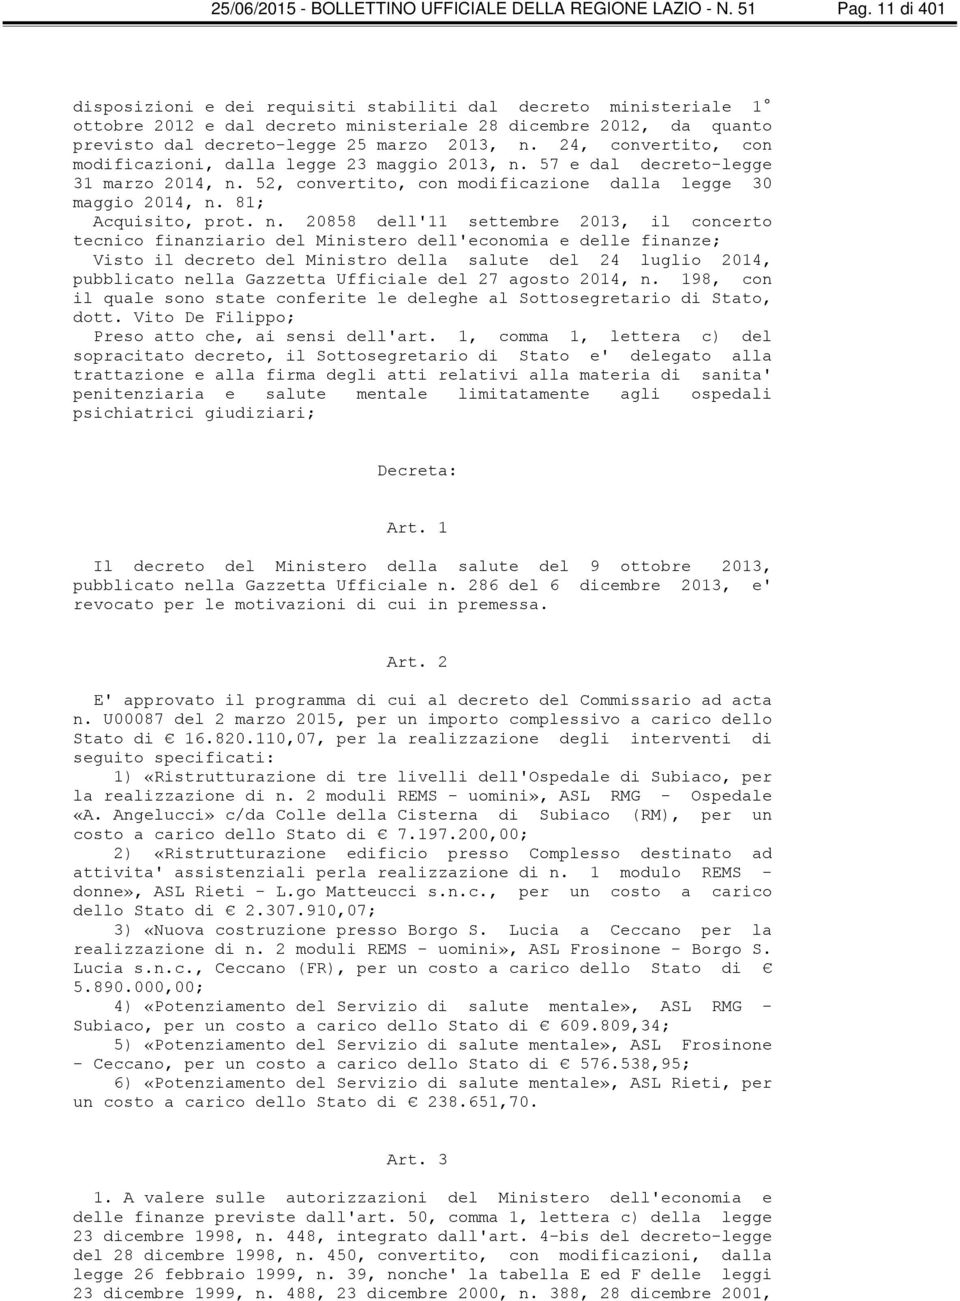 24, convertito, con modificazioni, dalla legge 23 maggio 2013, n.